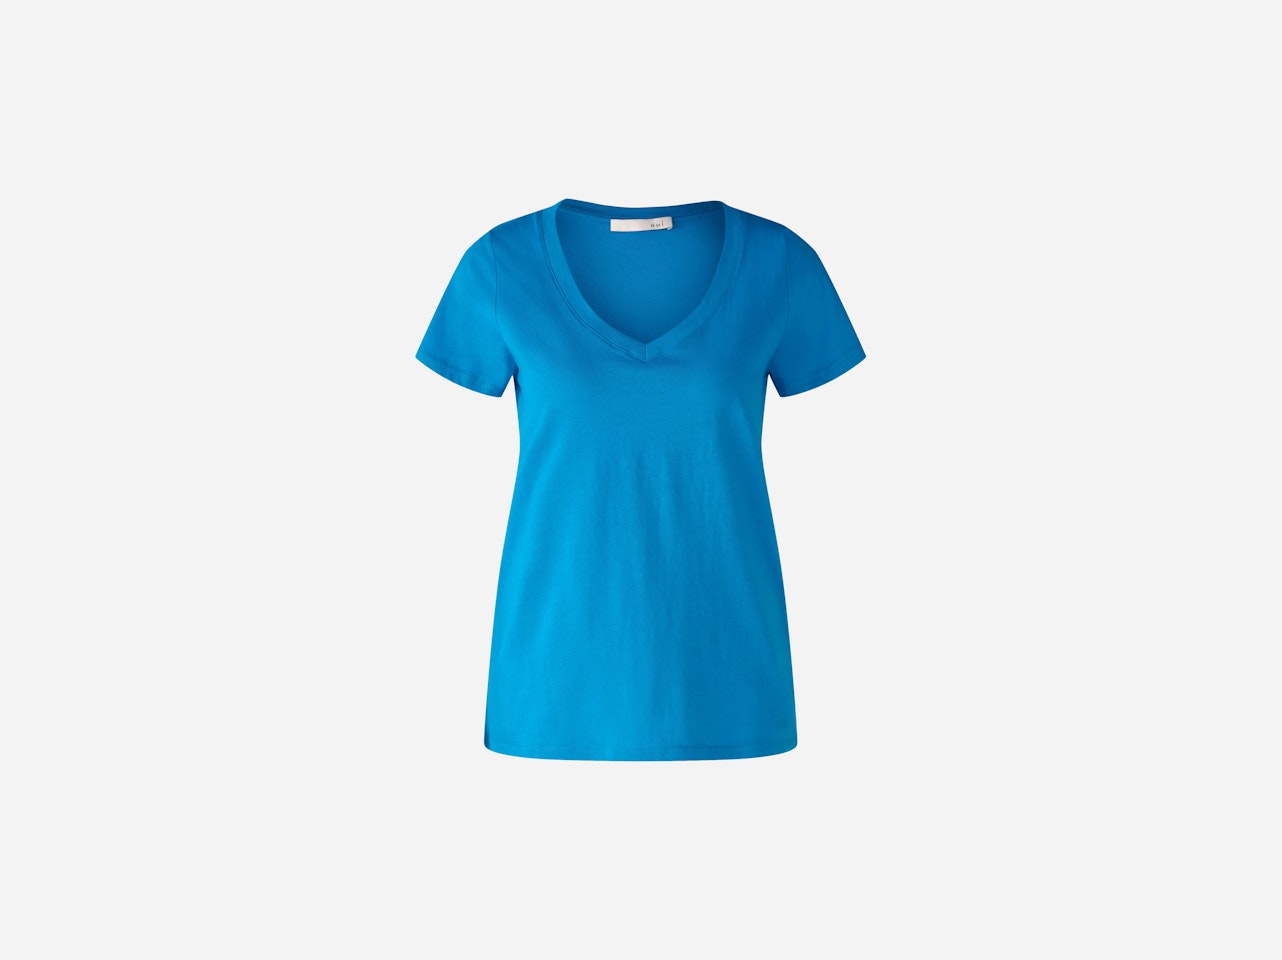 Bild 5 von CARLI T-Shirt 100% Bio-Baumwolle in blue jewel | Oui